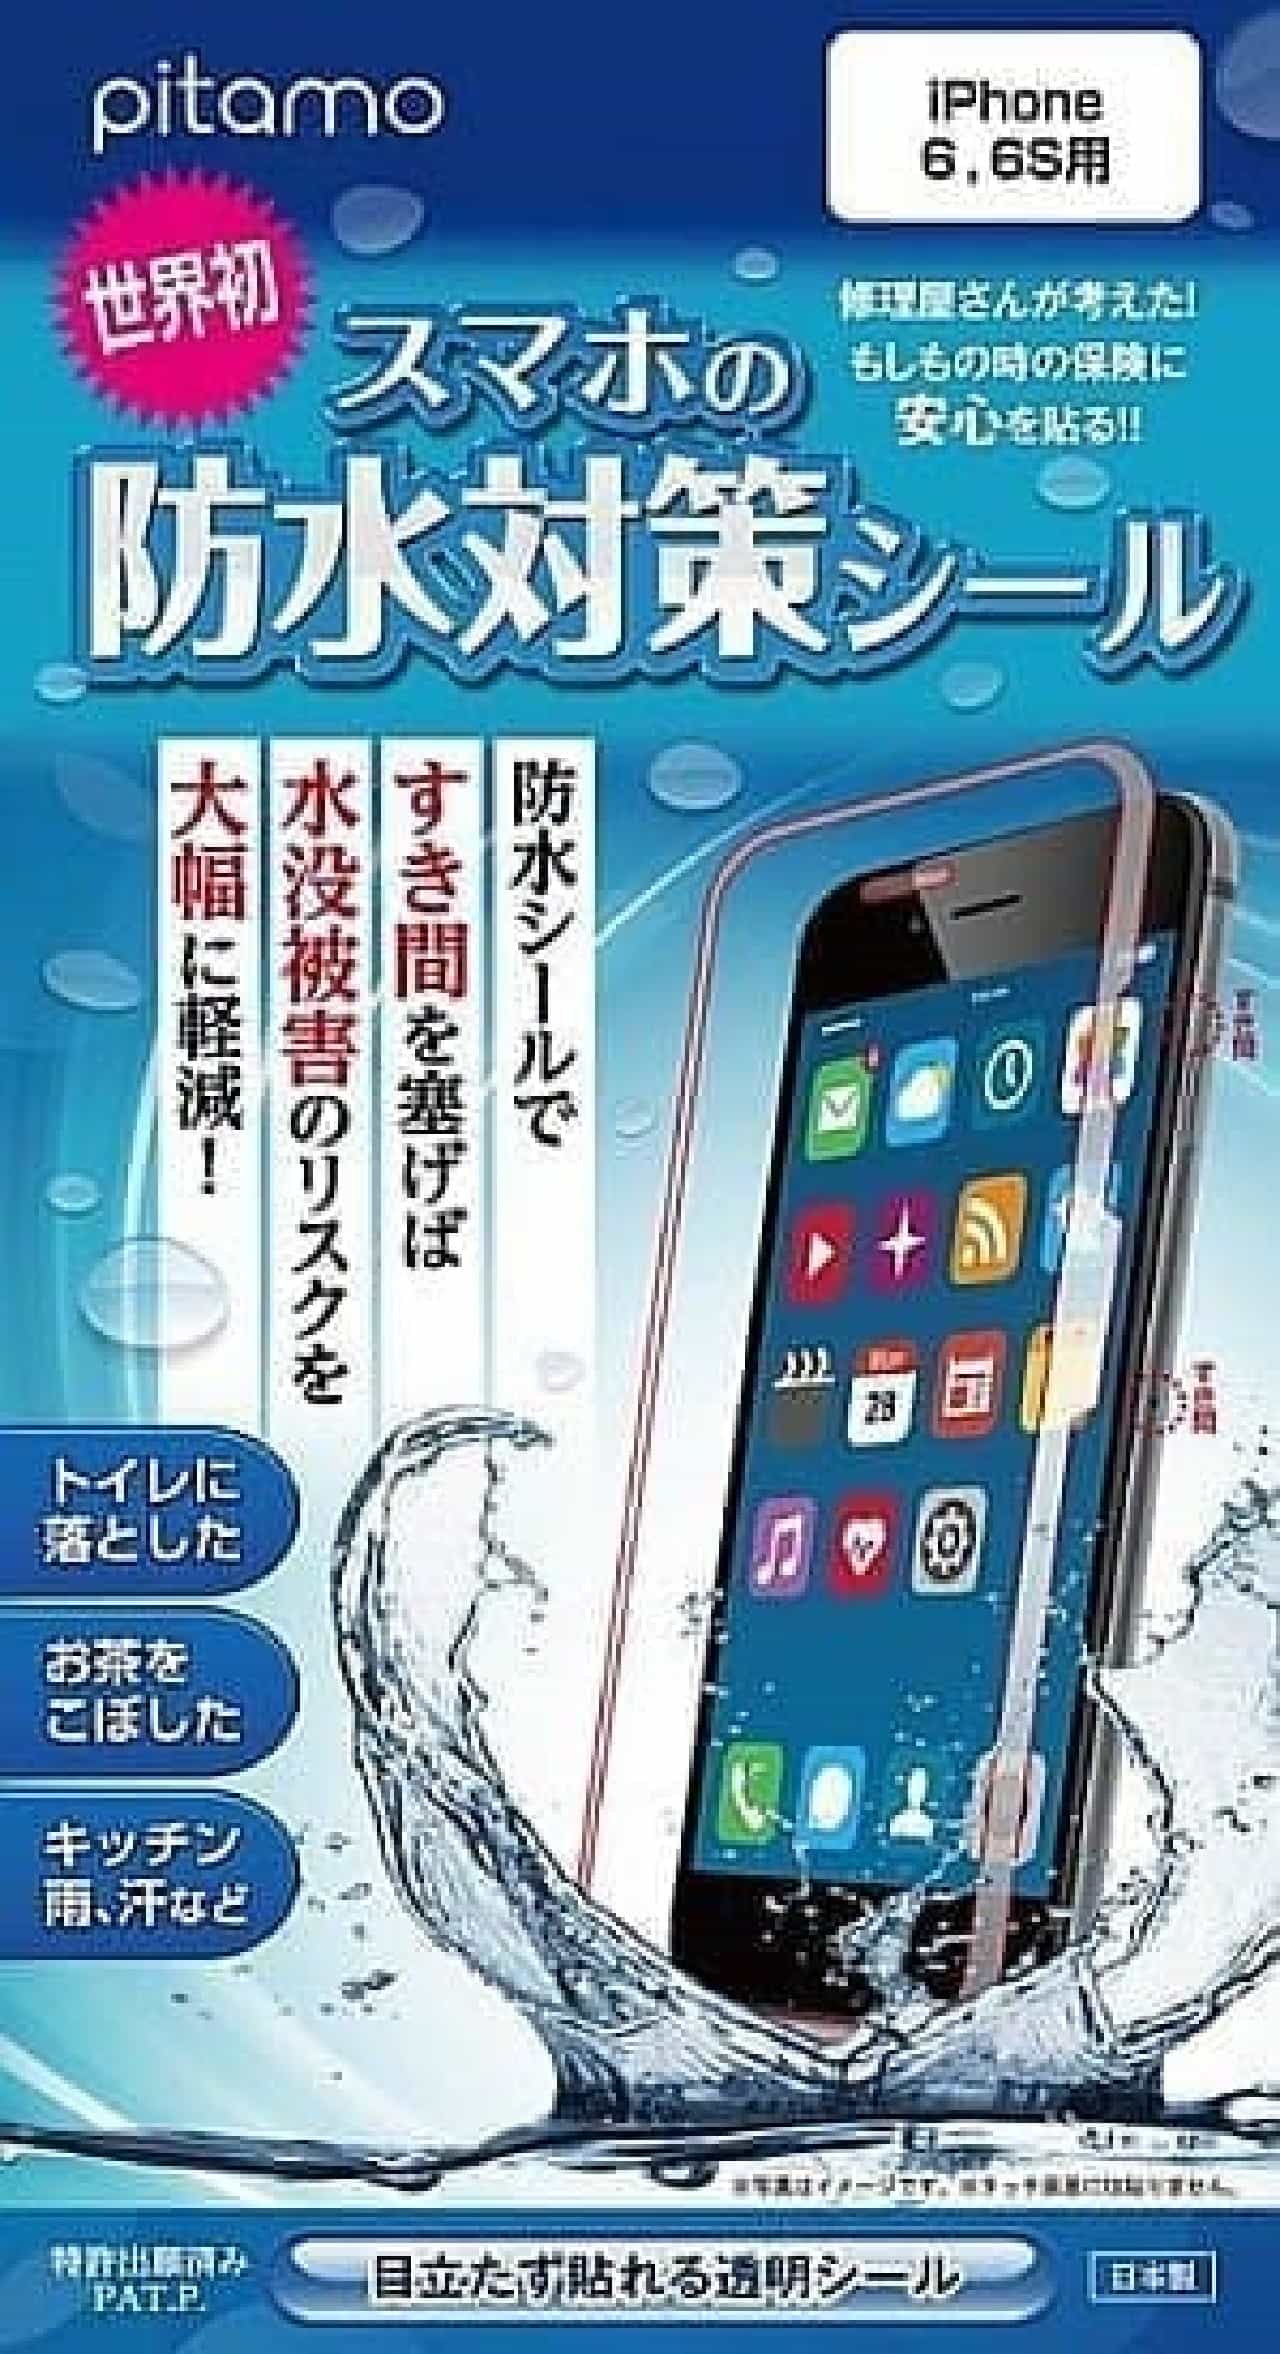 Iphone 6 6s対応 スマホの防水対策シール がリニューアル発売 トイレに落ちてもすぐに拾えば安心 インターネットコム